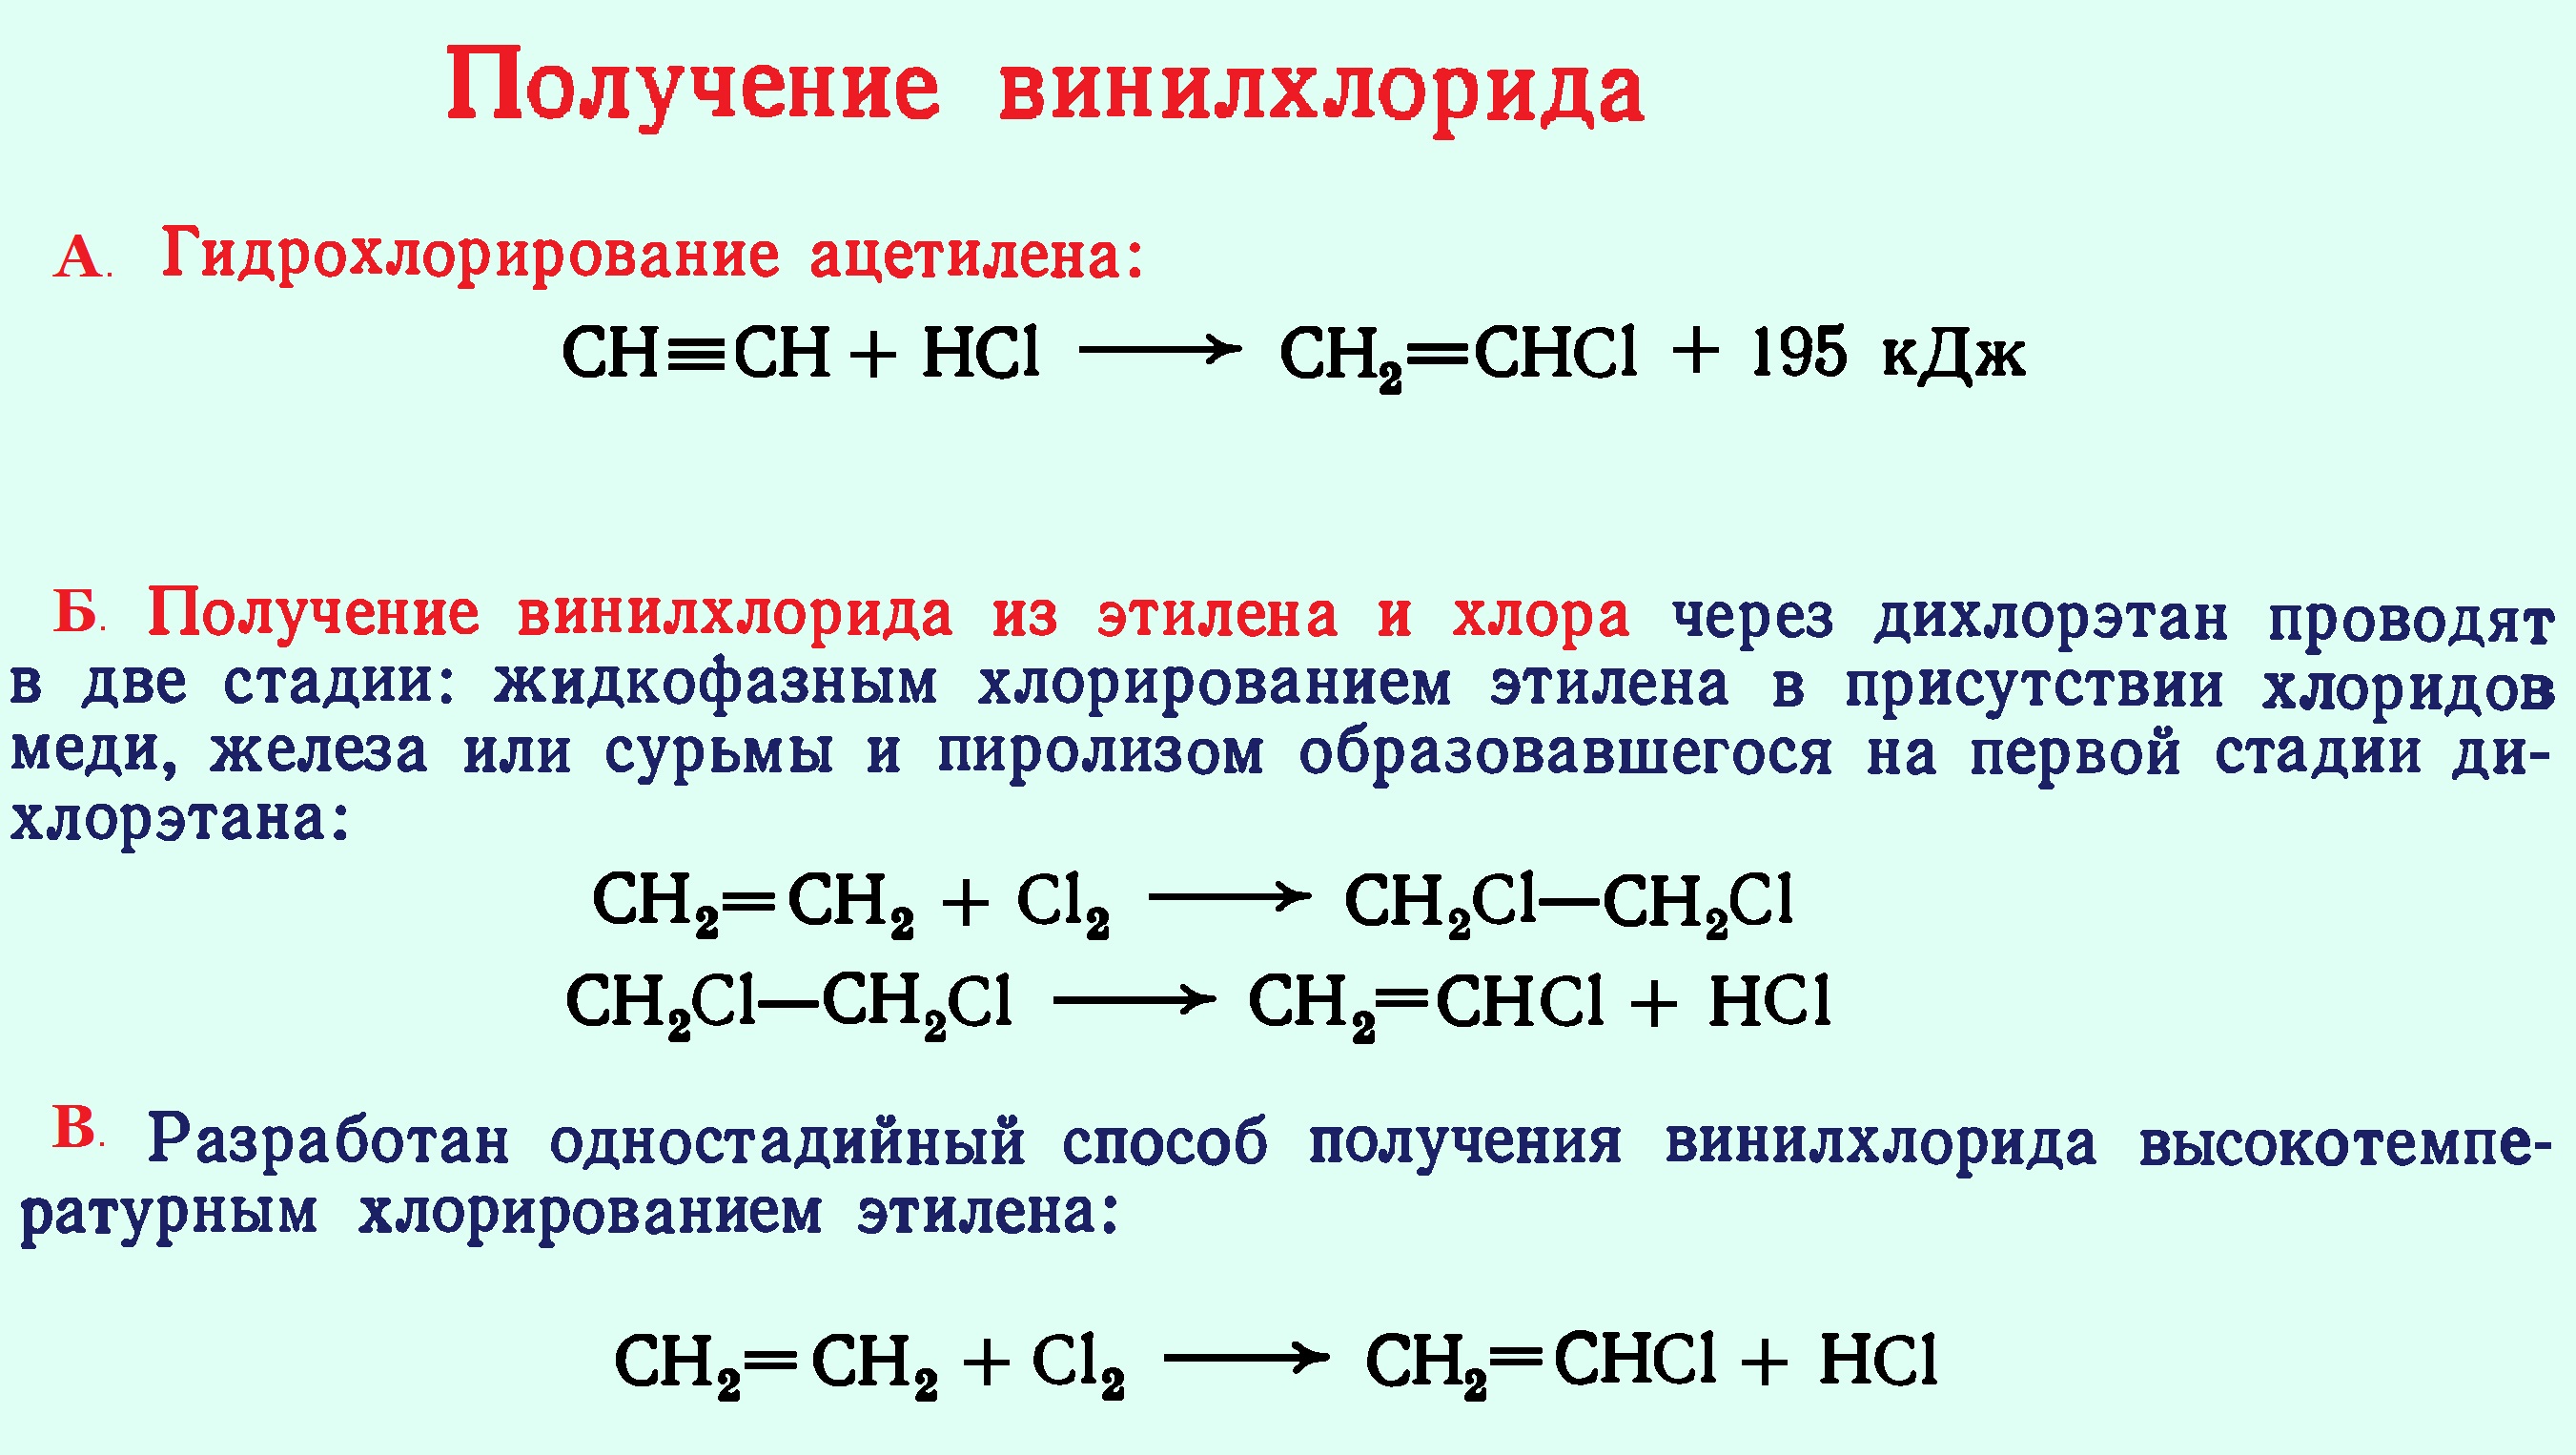 реакции получения винилхлорида 